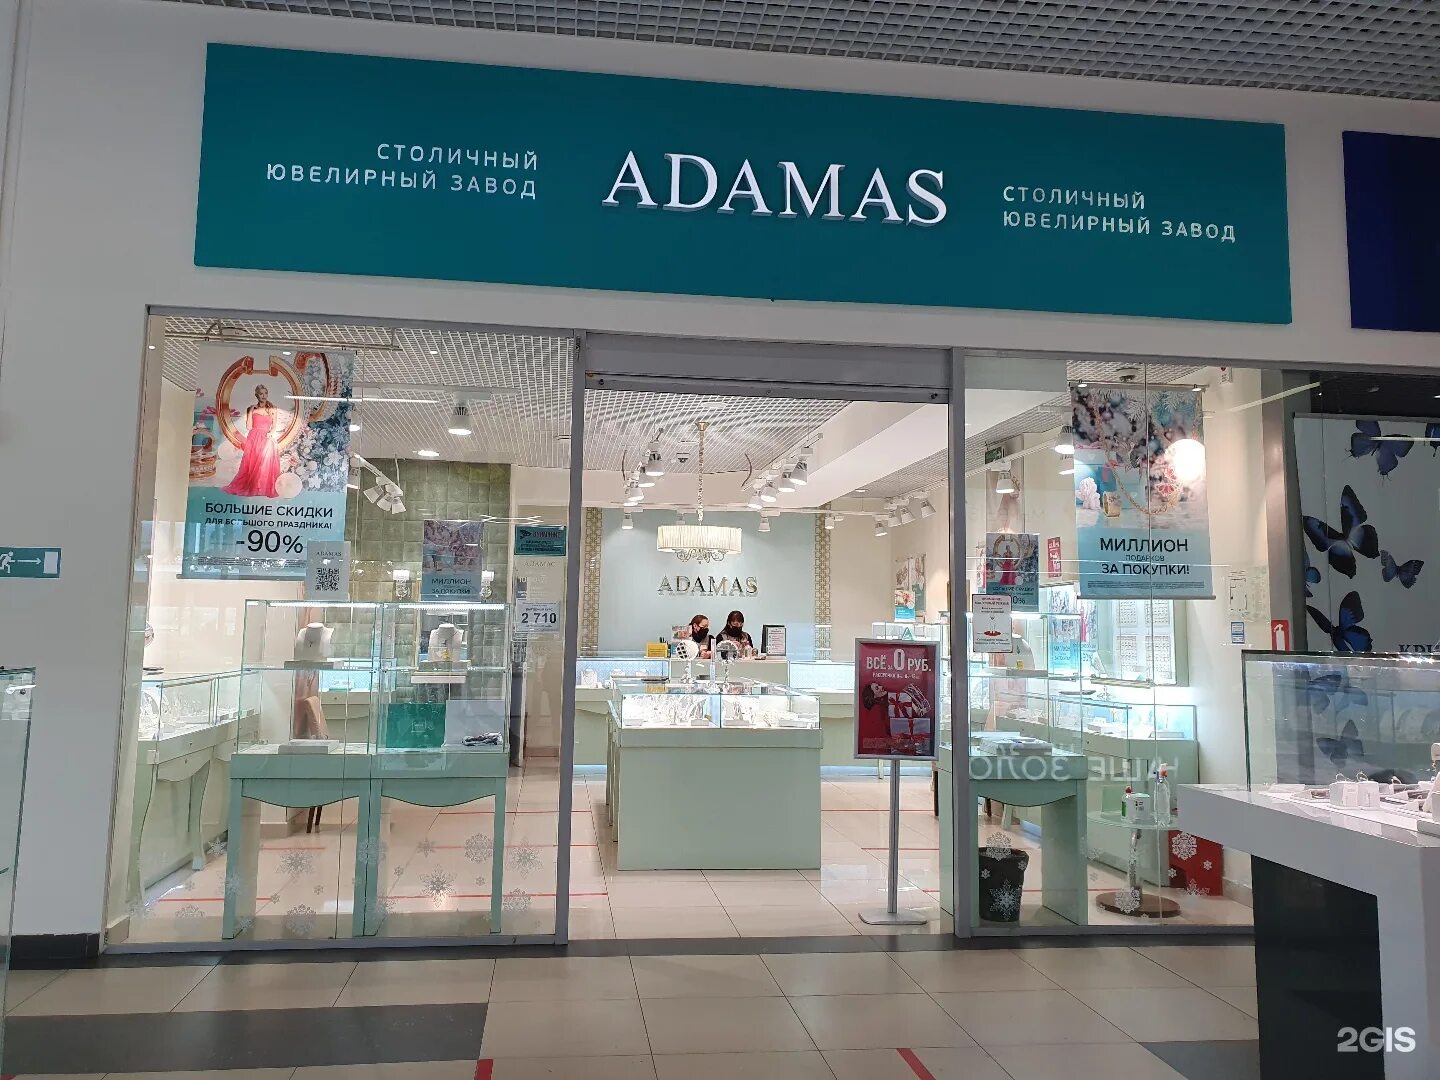 Адамас ювелирный магазин адреса